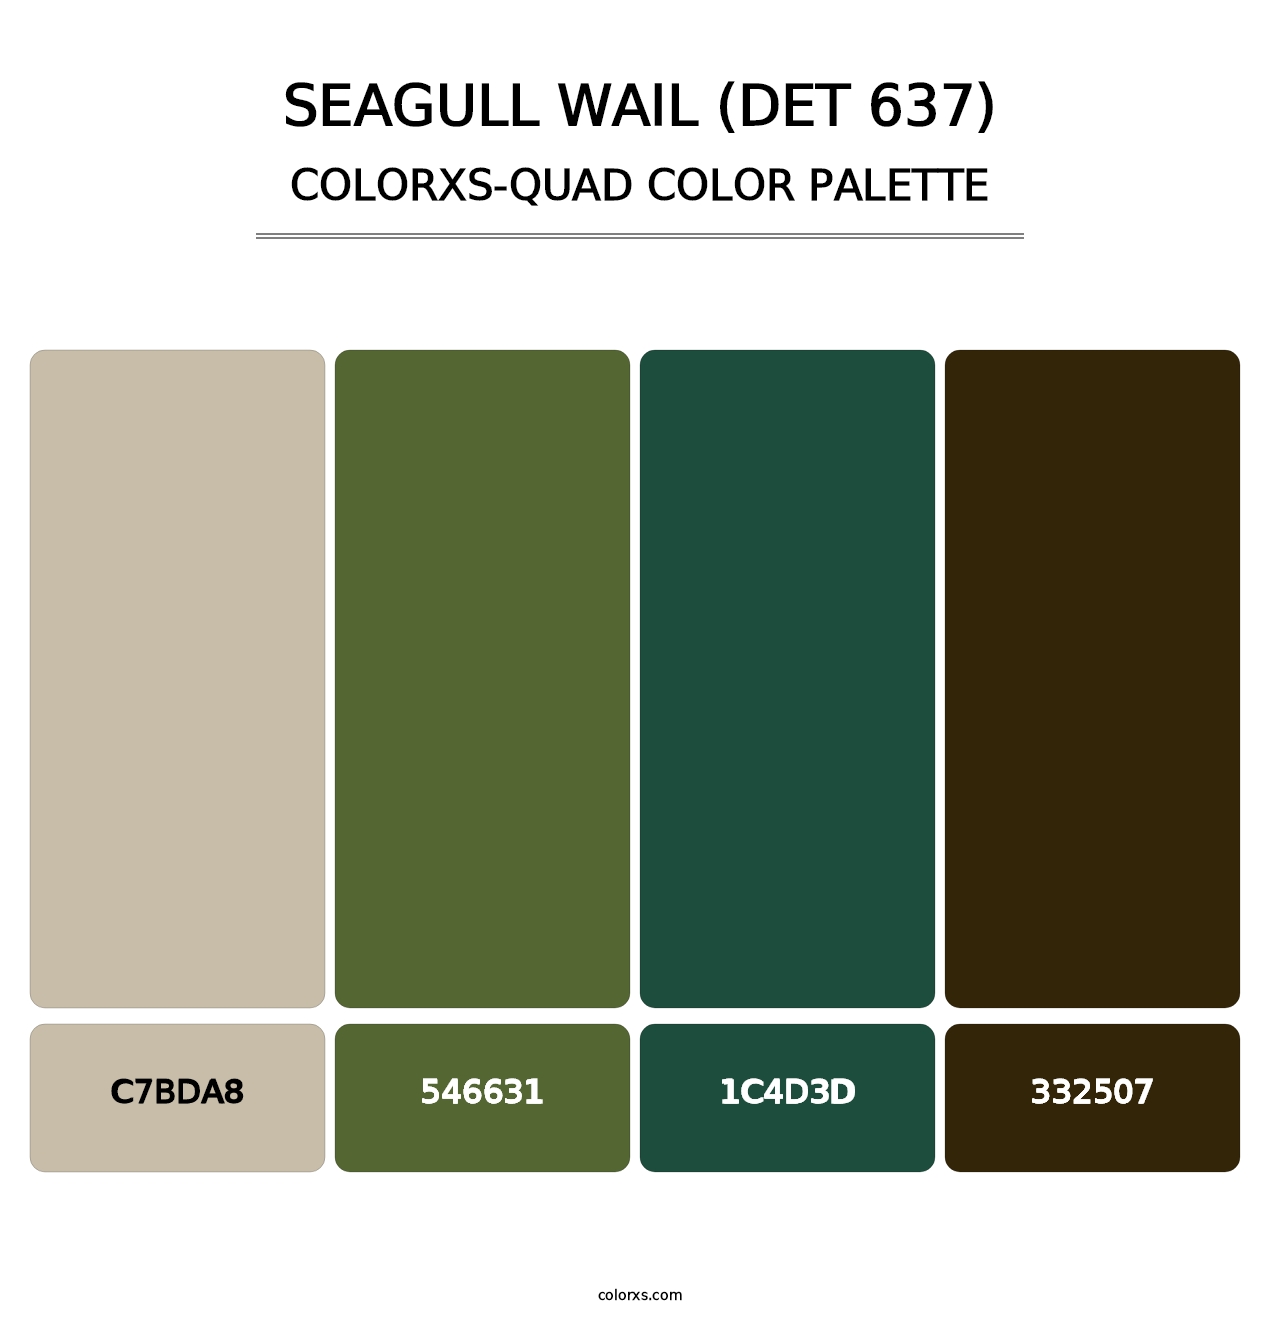 Seagull Wail (DET 637) - Colorxs Quad Palette